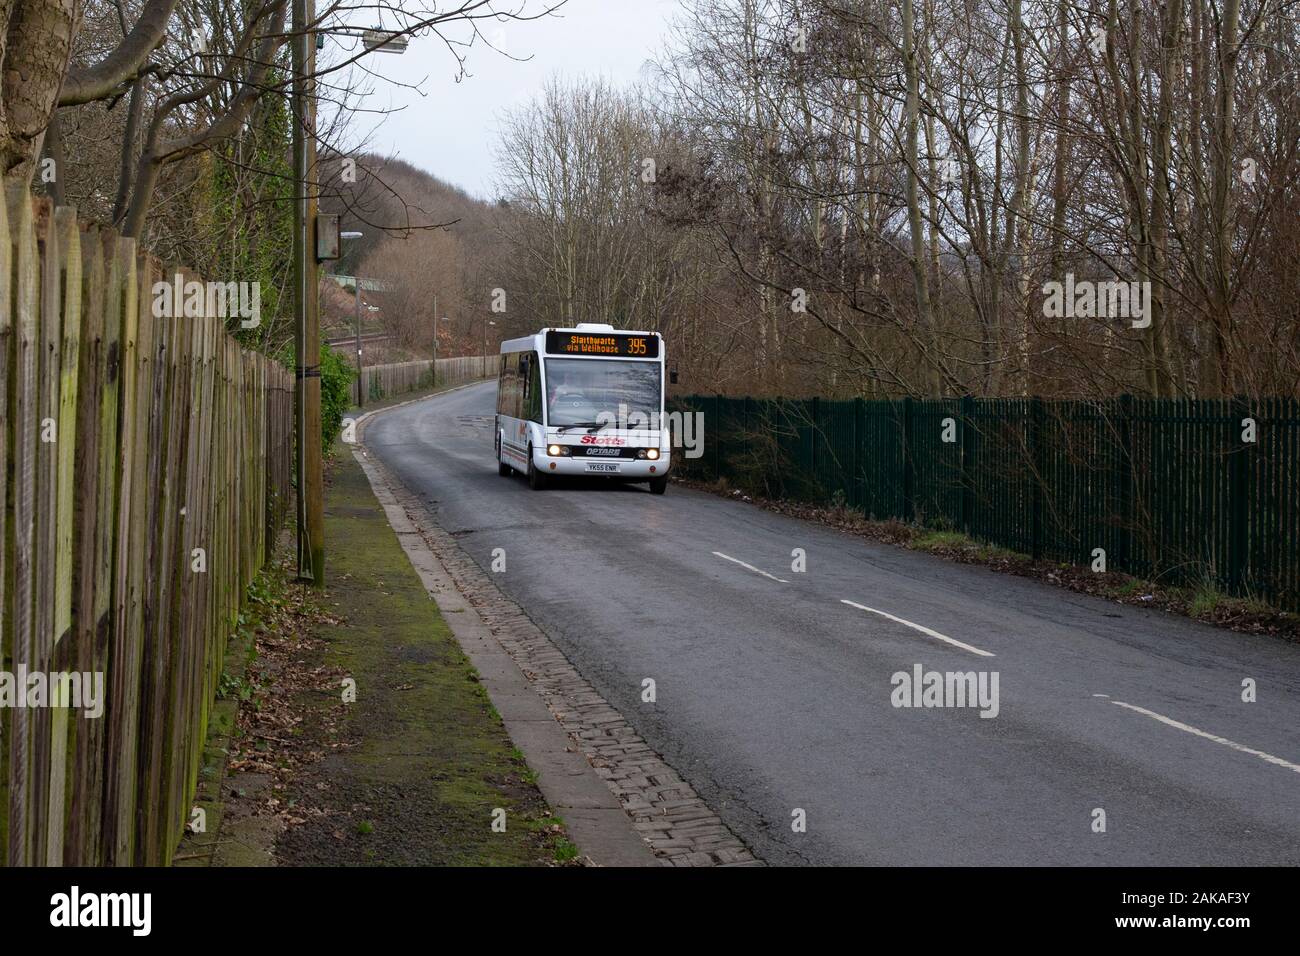 E. Stott & Söhne, niedrige zugänglich Bus entspricht PSVAR Verordnungen Betrieb der 395 lokalen Route in Huddersfield, West Yorkshire. GROSSBRITANNIEN Stockfoto